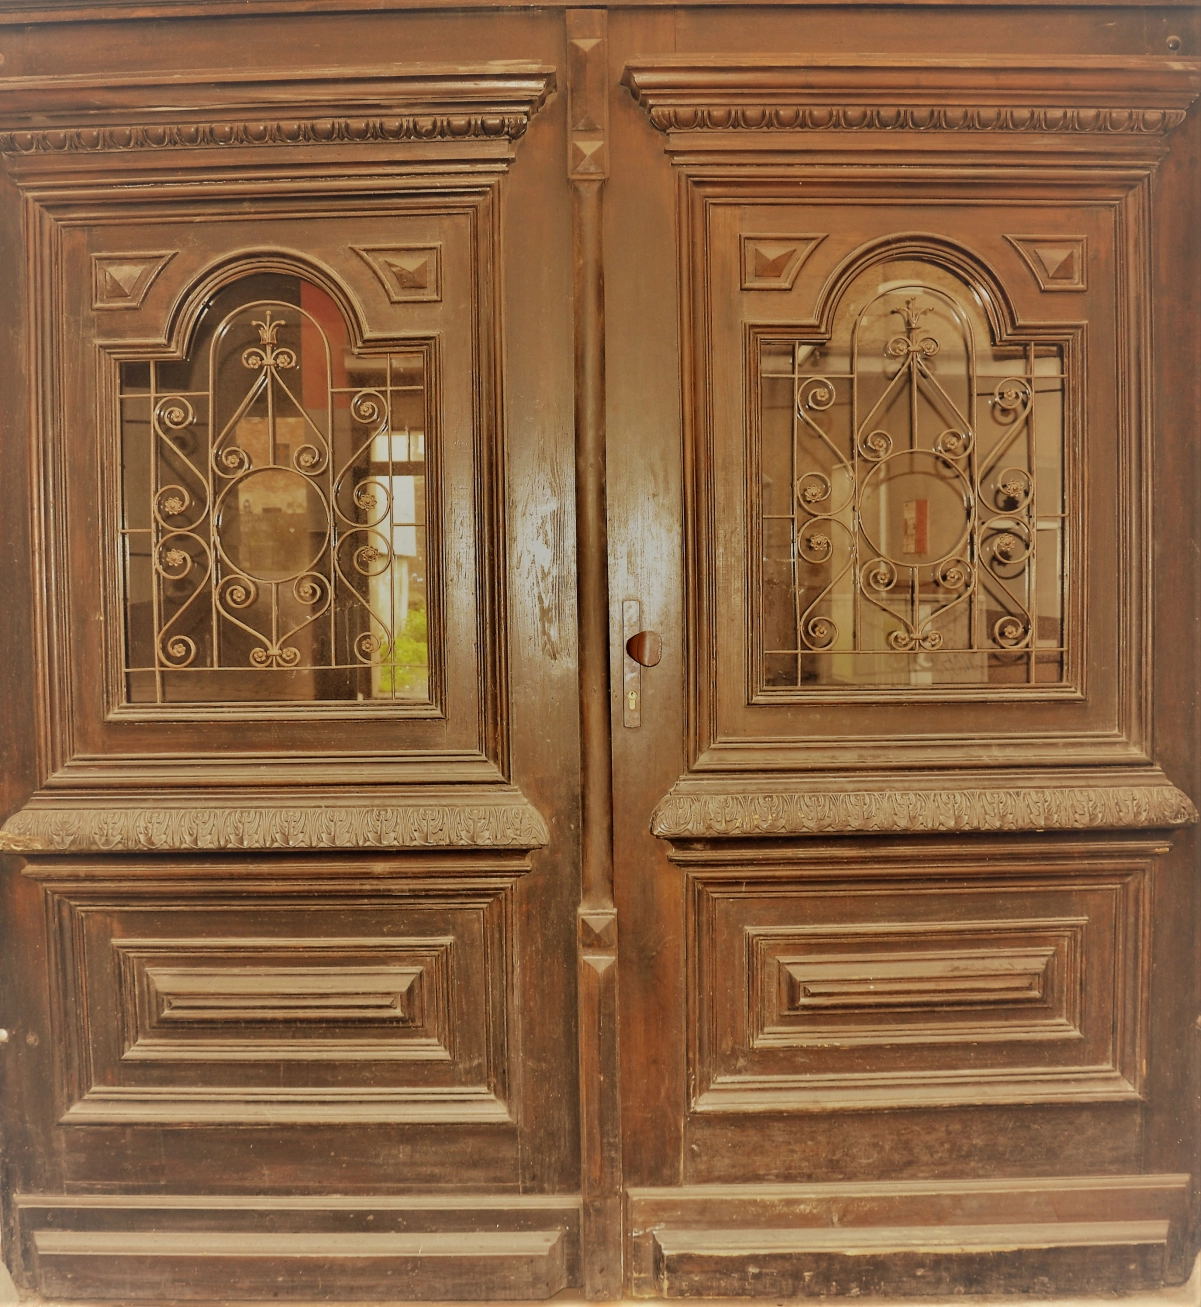 Zabytkowe drzwi wejściowe do jednej z kamienic w Nowej Rudzie